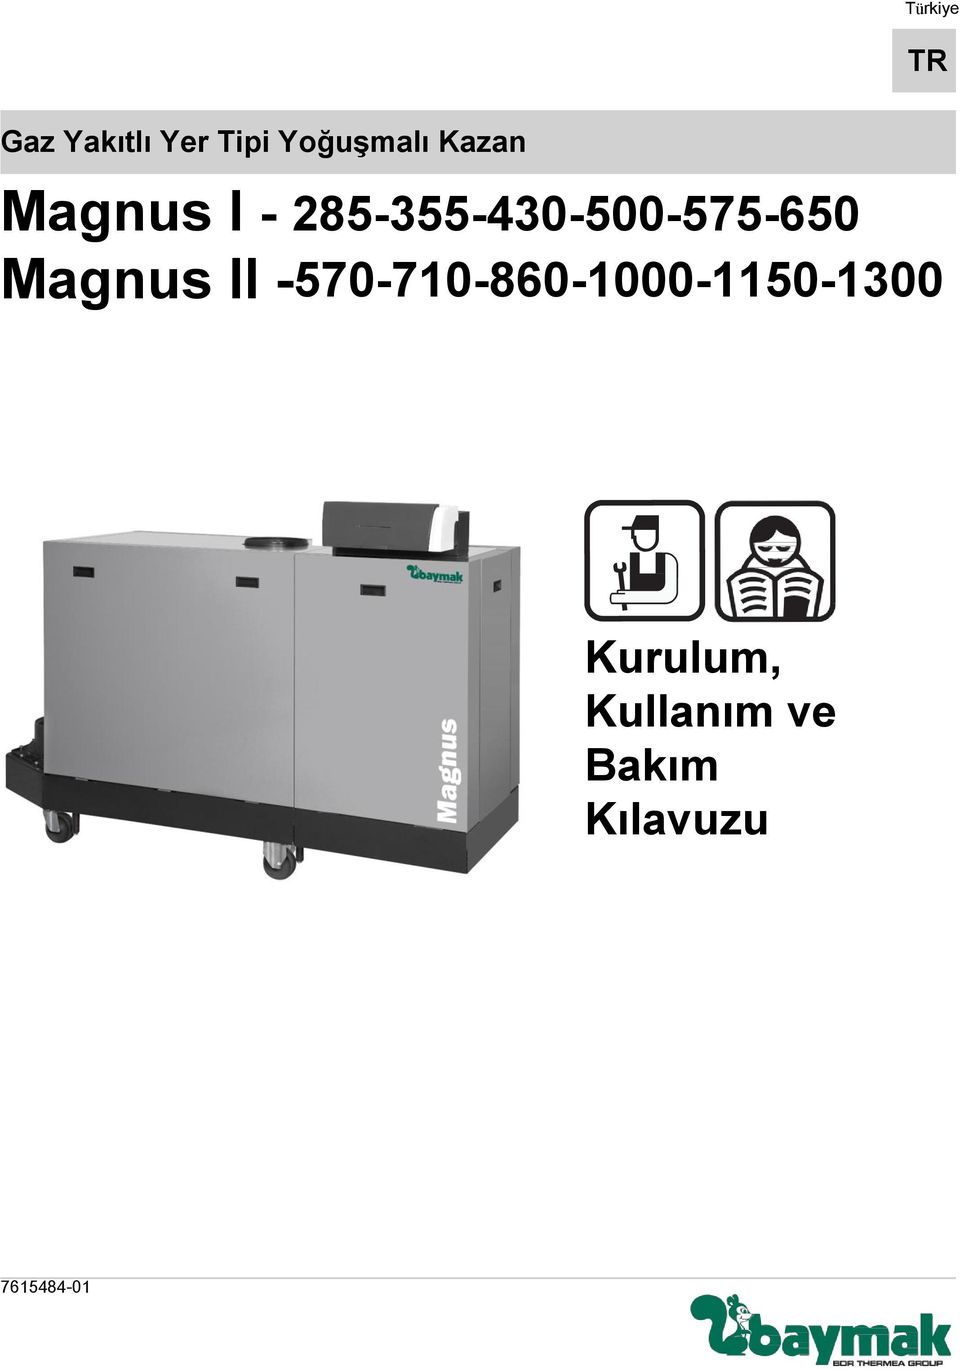 Magnus II -570-710-860-1000-1150-1300